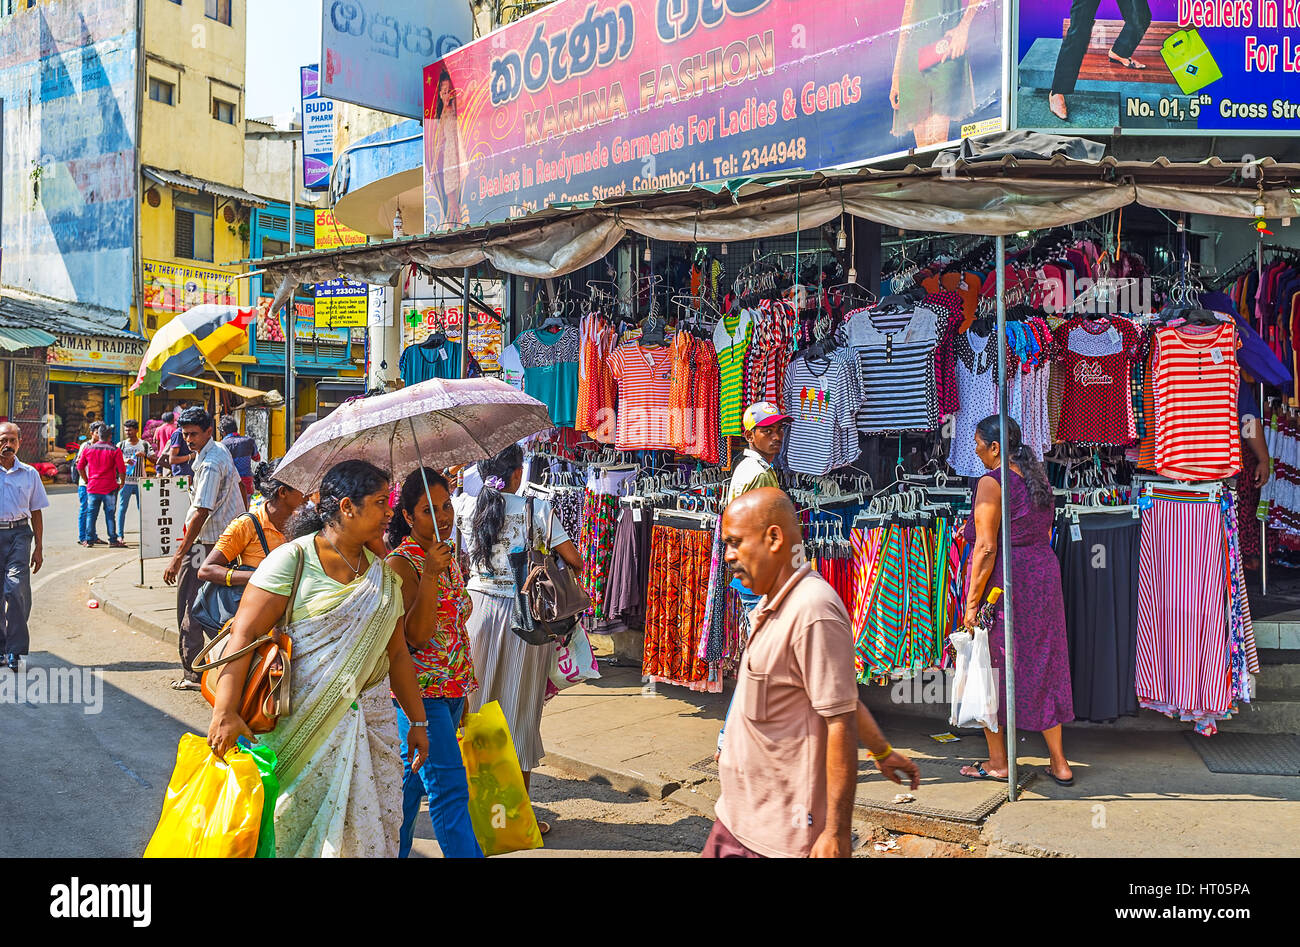 COLOMBO, SRI LANKA - Diciembre 6, 2016: El mercado de ropa barata en 5Cross Street de Pettah distrito atrae a locales y turistas que visitan la ciudad Foto de stock